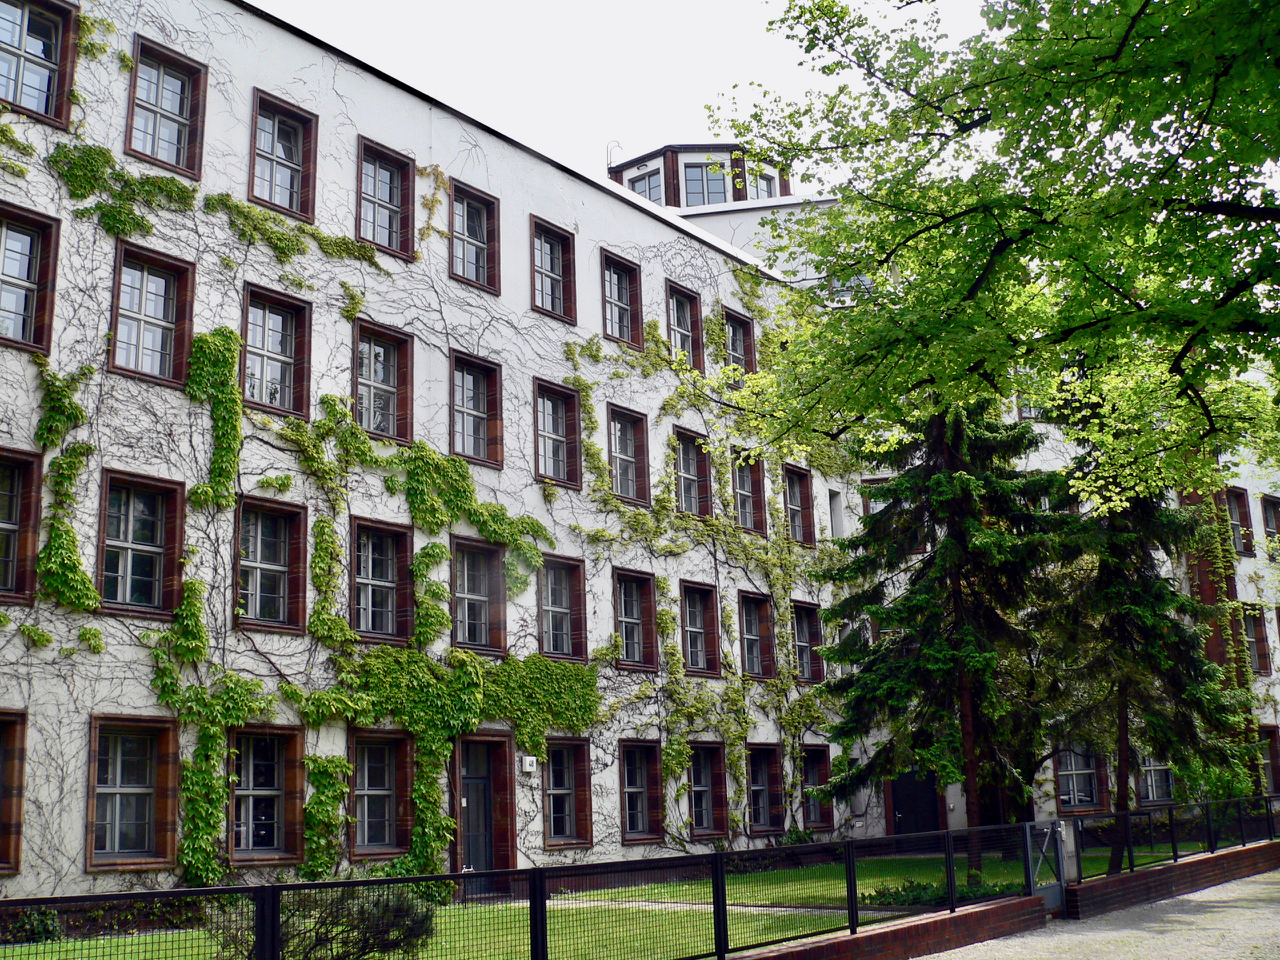 Die Oberpostdirektion ist ein eher unbekanntes Berliner Baudenkmal, dabei ist das ehemalige Postgebäude architektonisch eindrucksvoll. Foto: Fridolin freudenfett (Peter Kuley), CC BY-SA 3.0, Wikimedia Commons